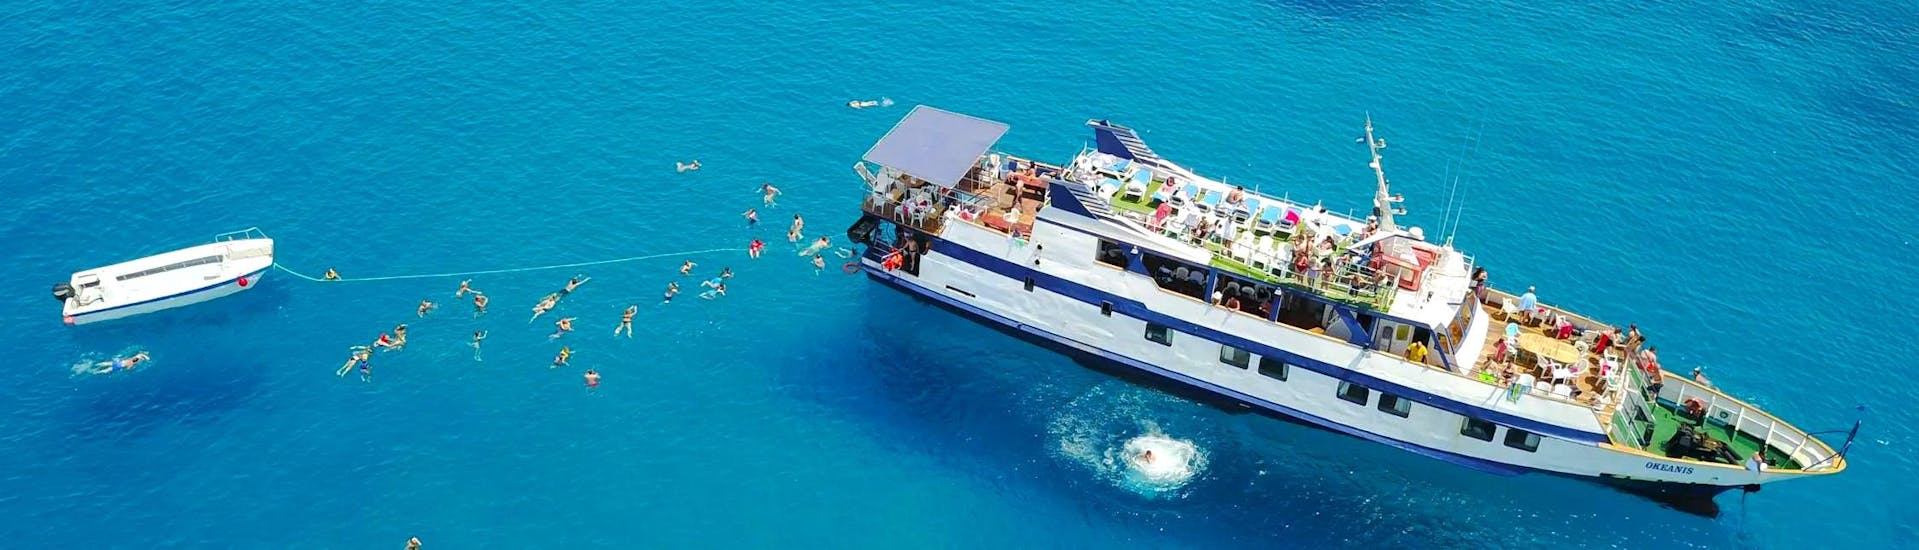 Vue du bateau dans le lagon bleu de Chypre lors d'une excursion en bateau avec Larnaca Napa Sea Cruises.